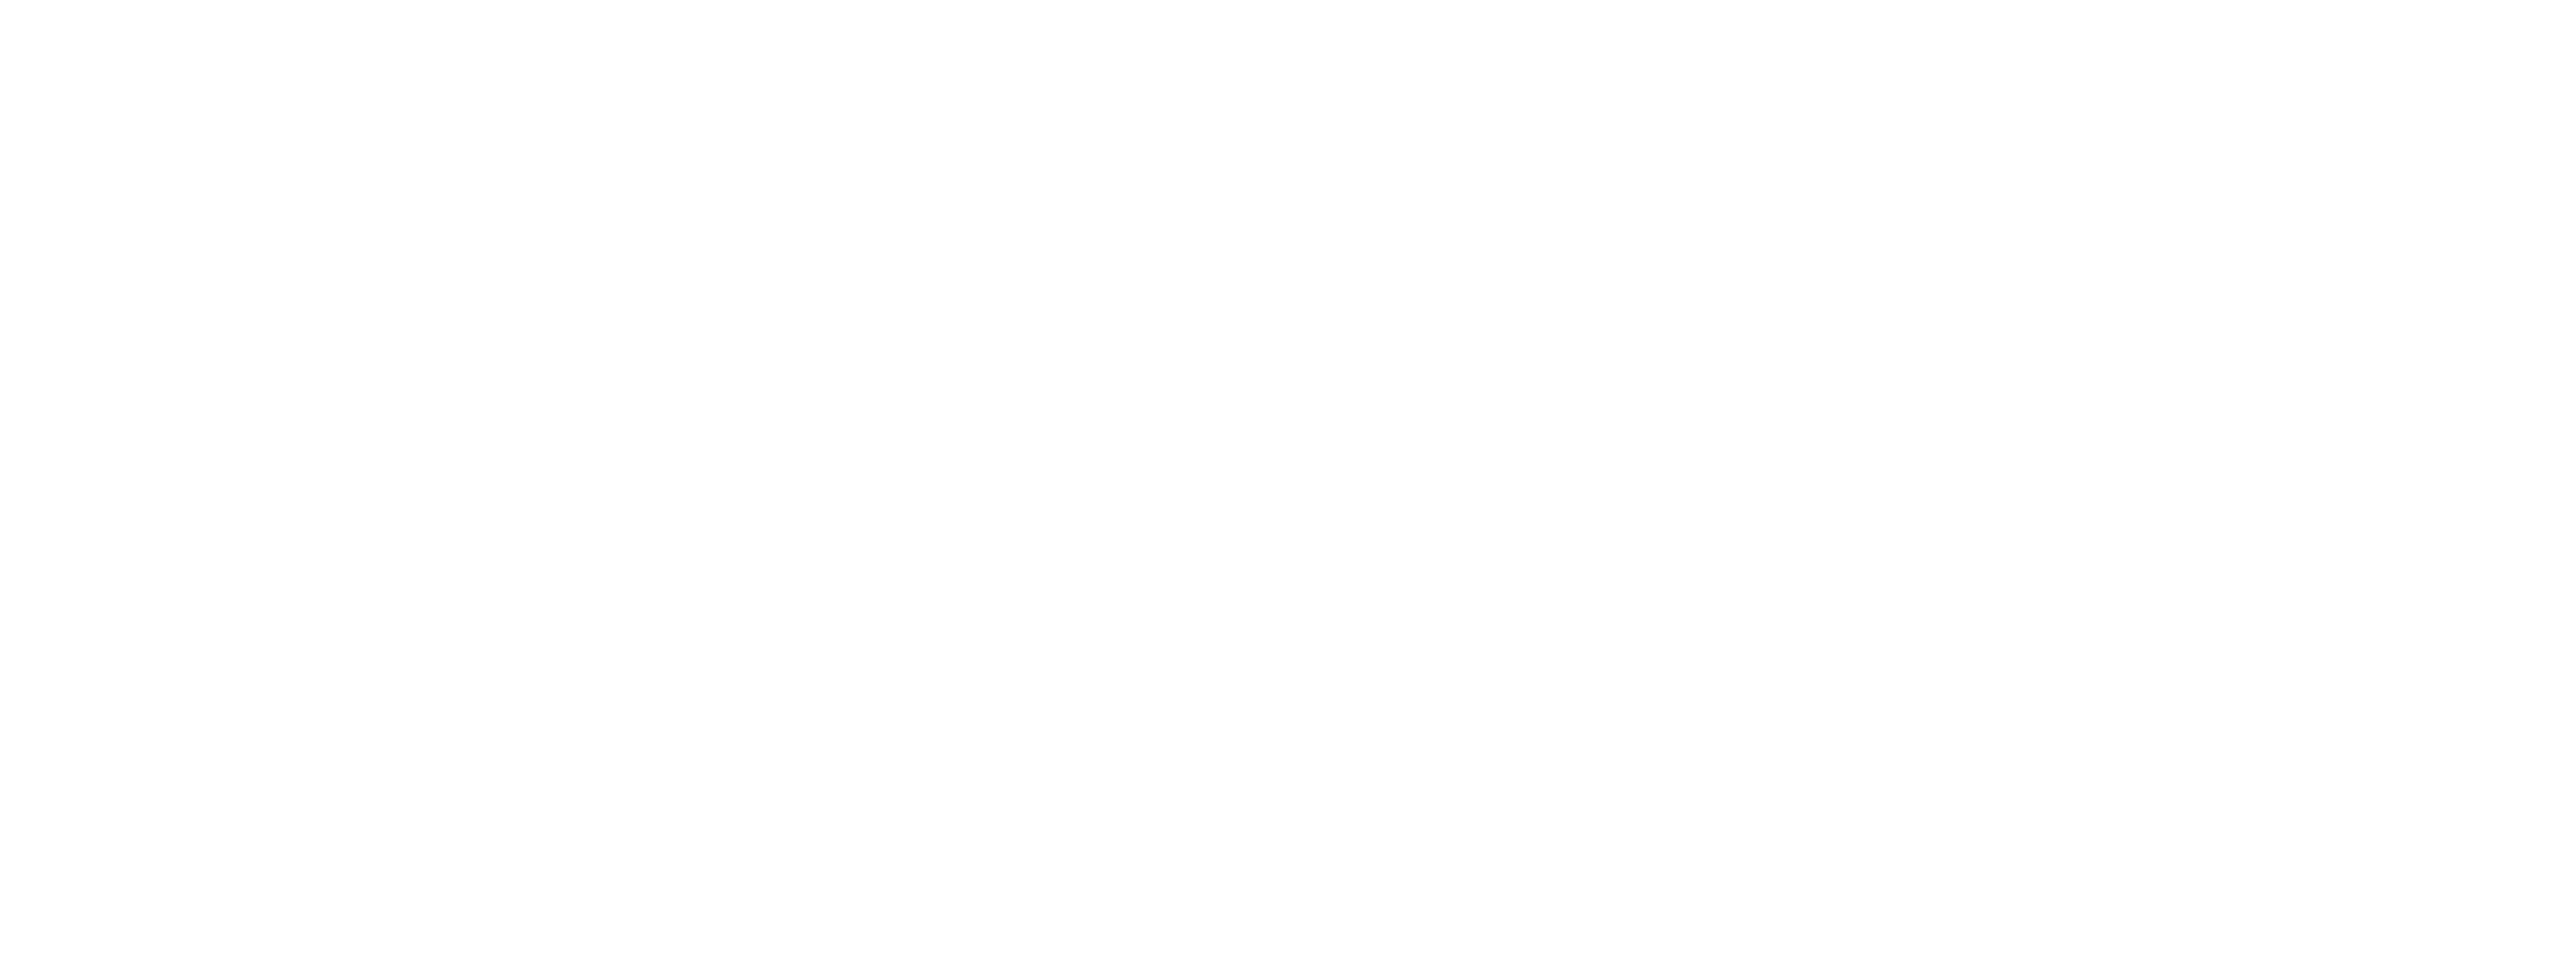 Granby Ranch Homes